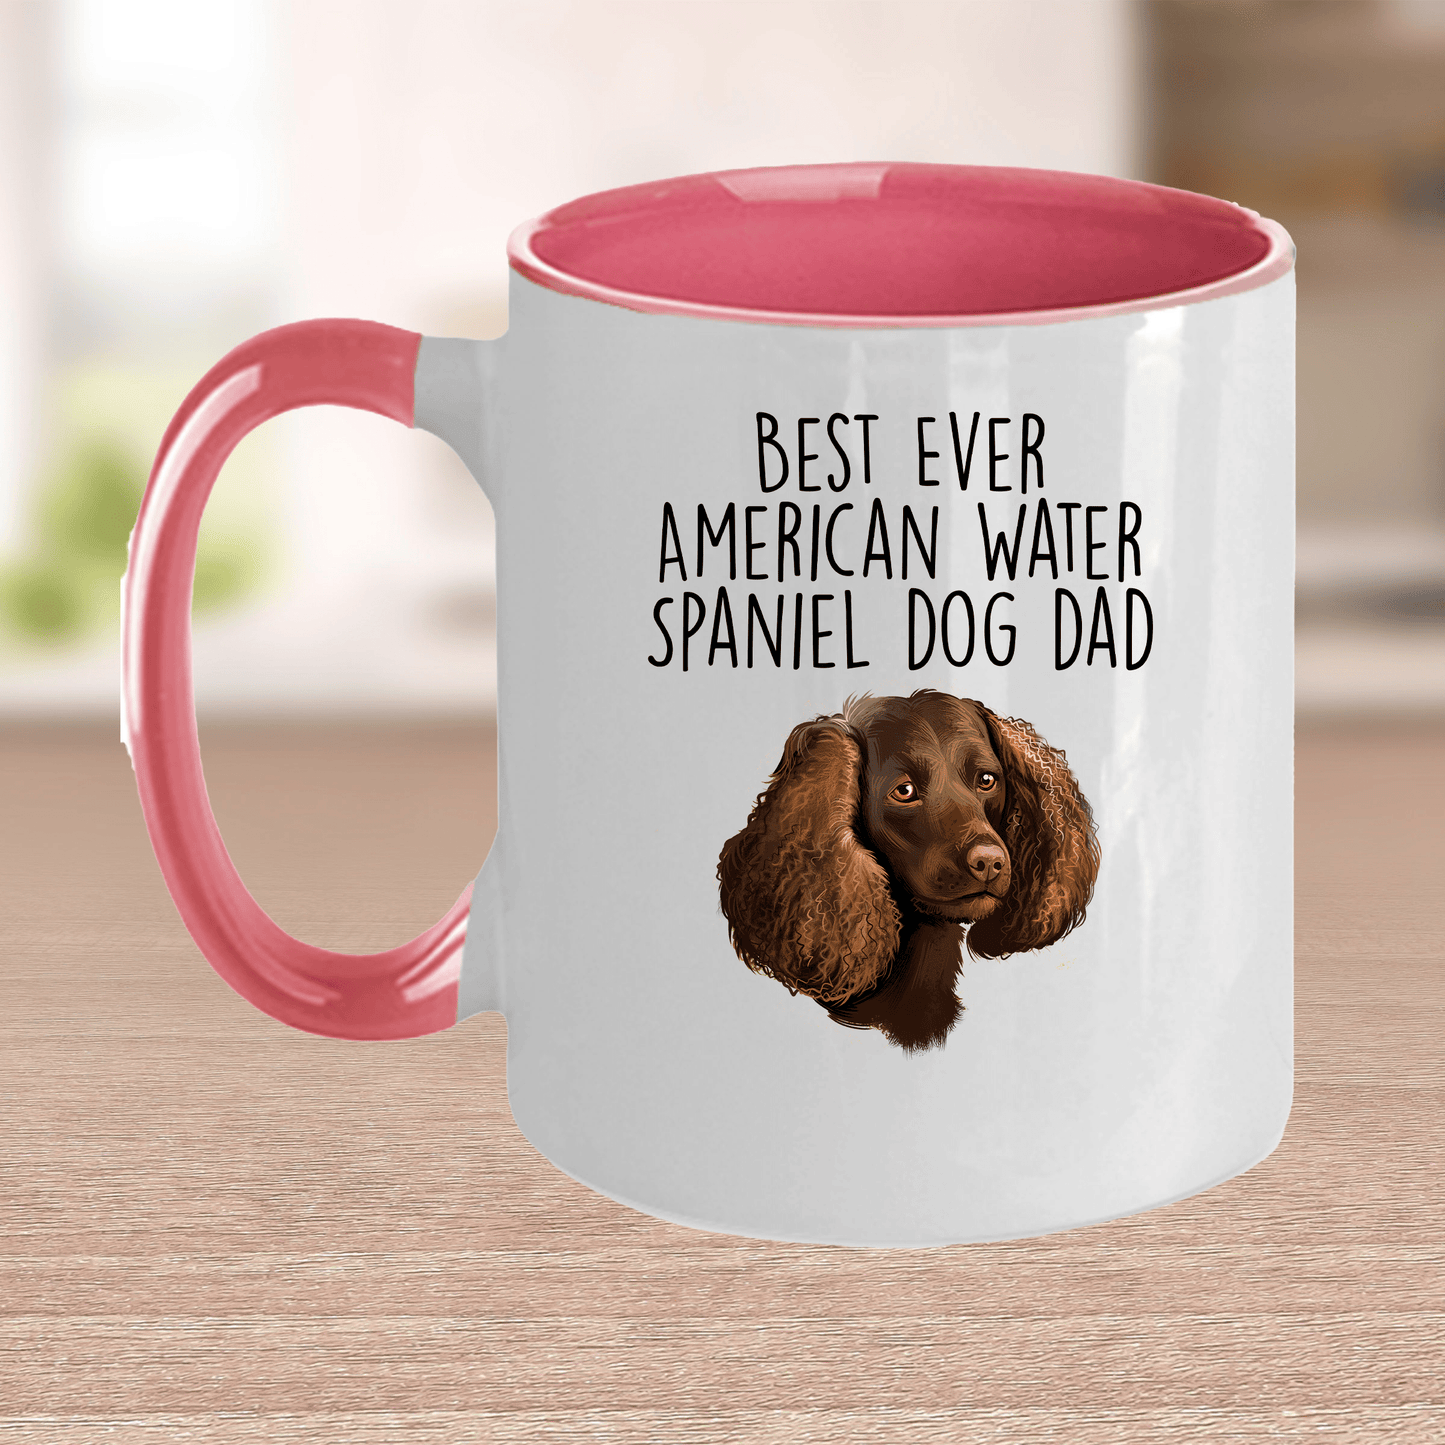 Best Ever American Water Spaniel Dog Dad Ceramic Coffee Mug